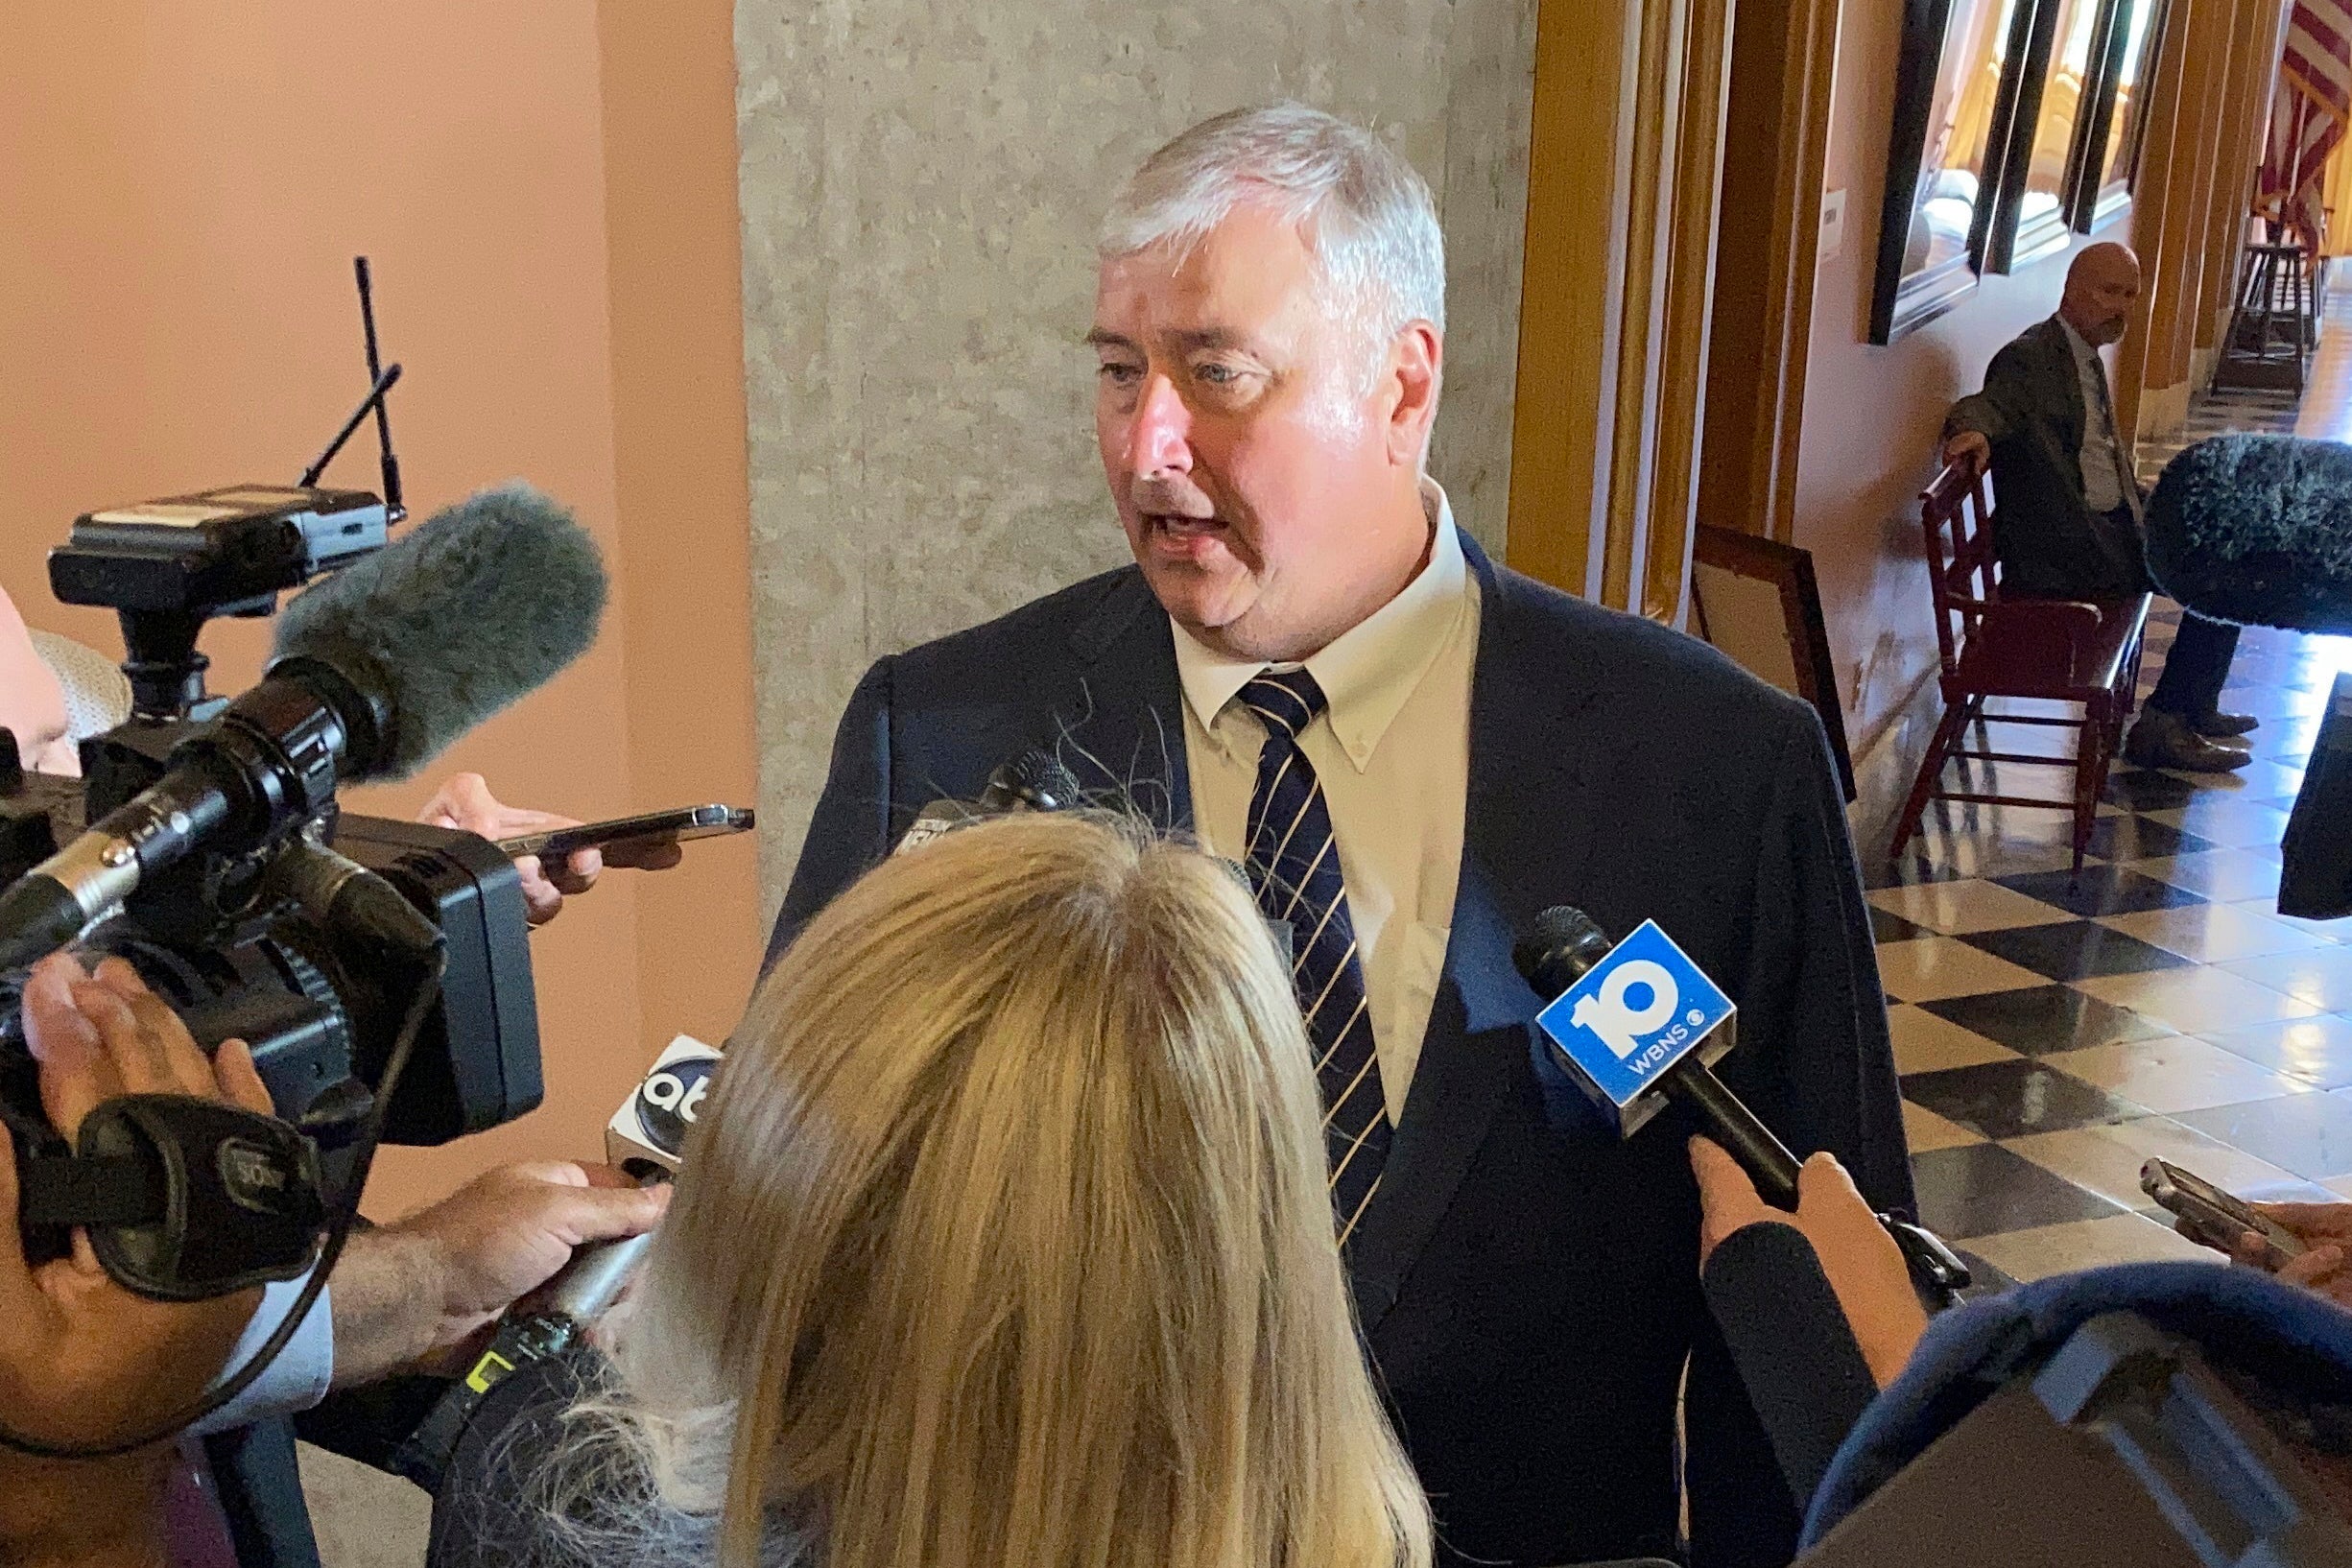 Bribery Investigation Ohio Lawmaker Expulsion